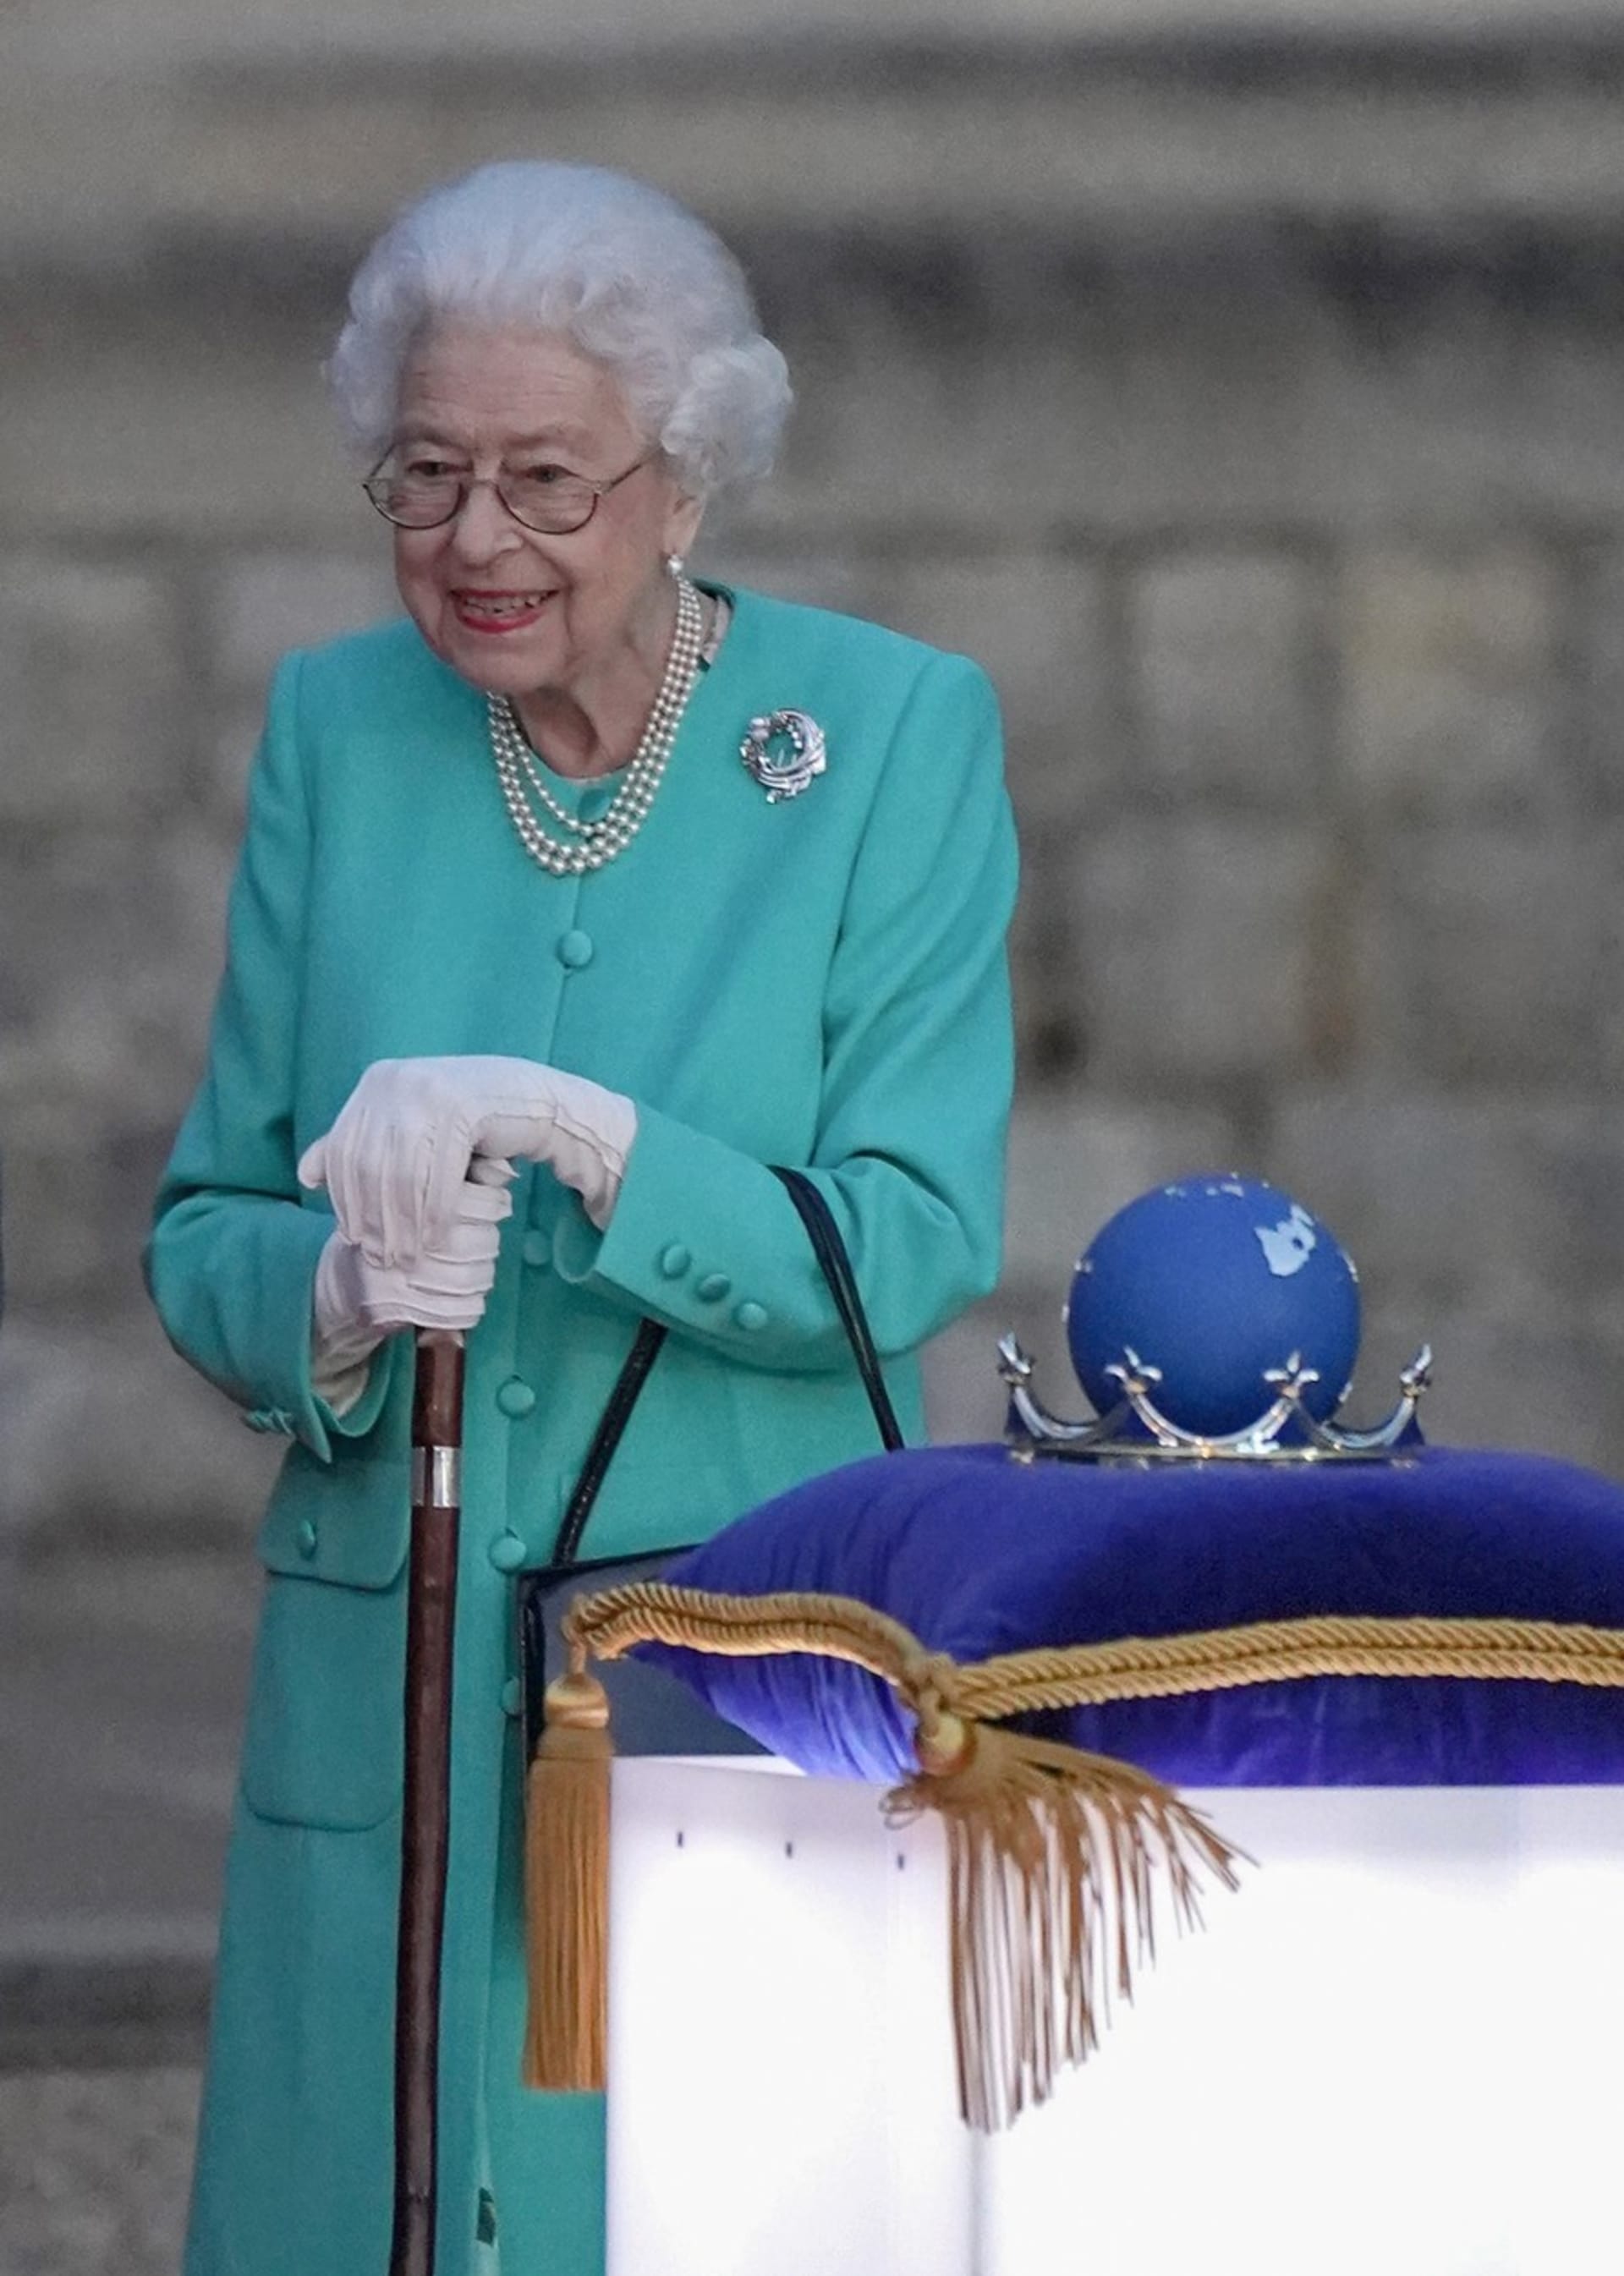 Světla v rámci události s názvem Beacon Lighting Ceremony královna rozsvěcovala v kostýmku tyrkysovém.